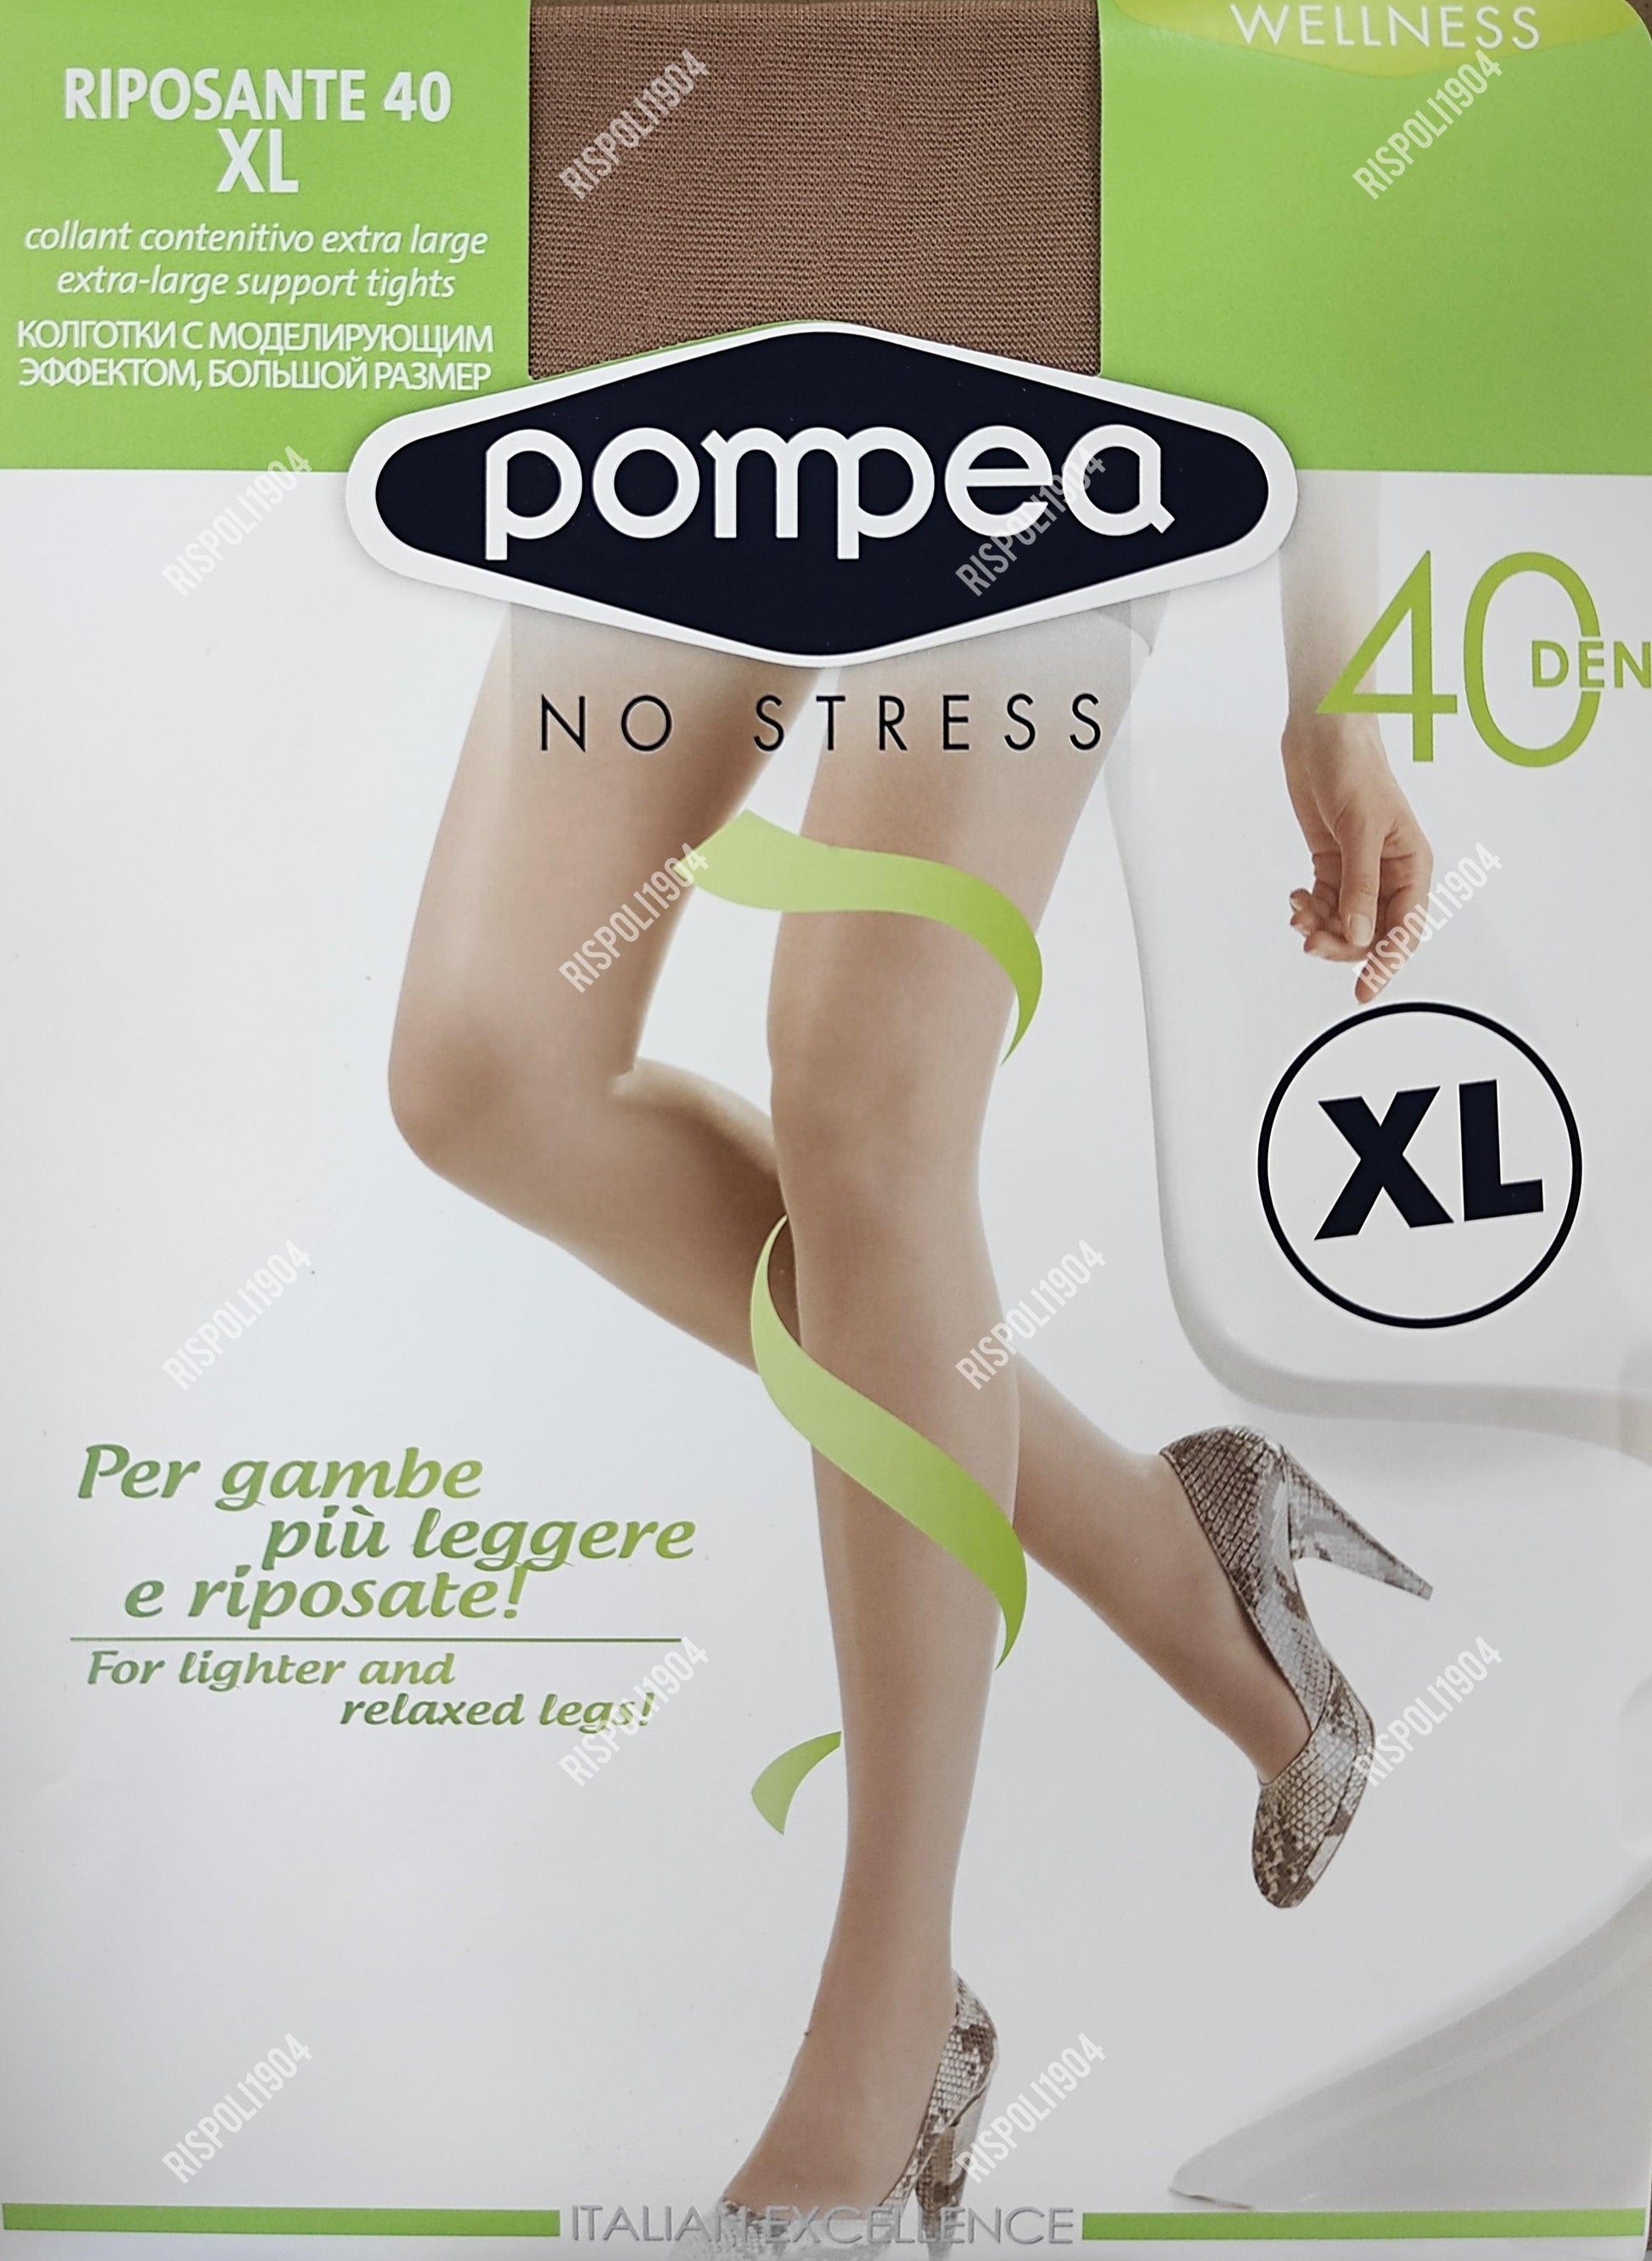 Collant riposante Pompea 40 den - SVENDITA TOTALE! - Merceria Rispoli